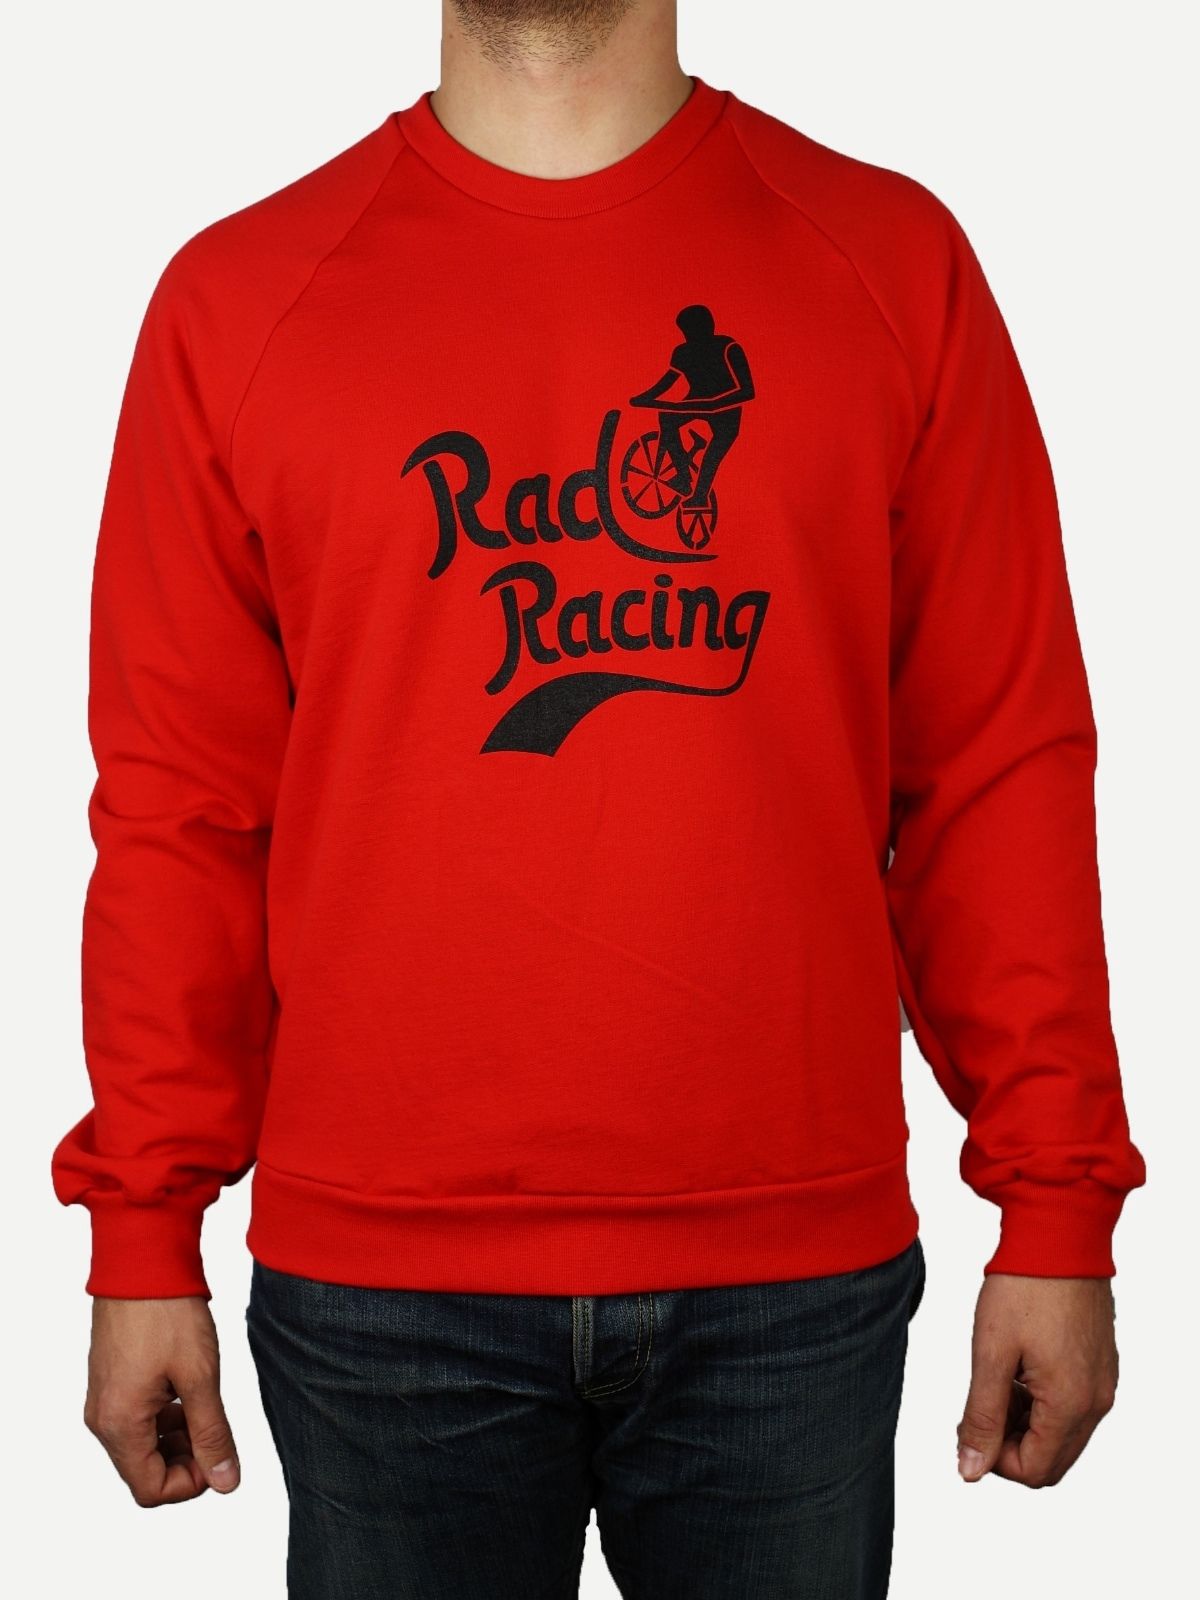 Rad Racing Sweatshirt Front View